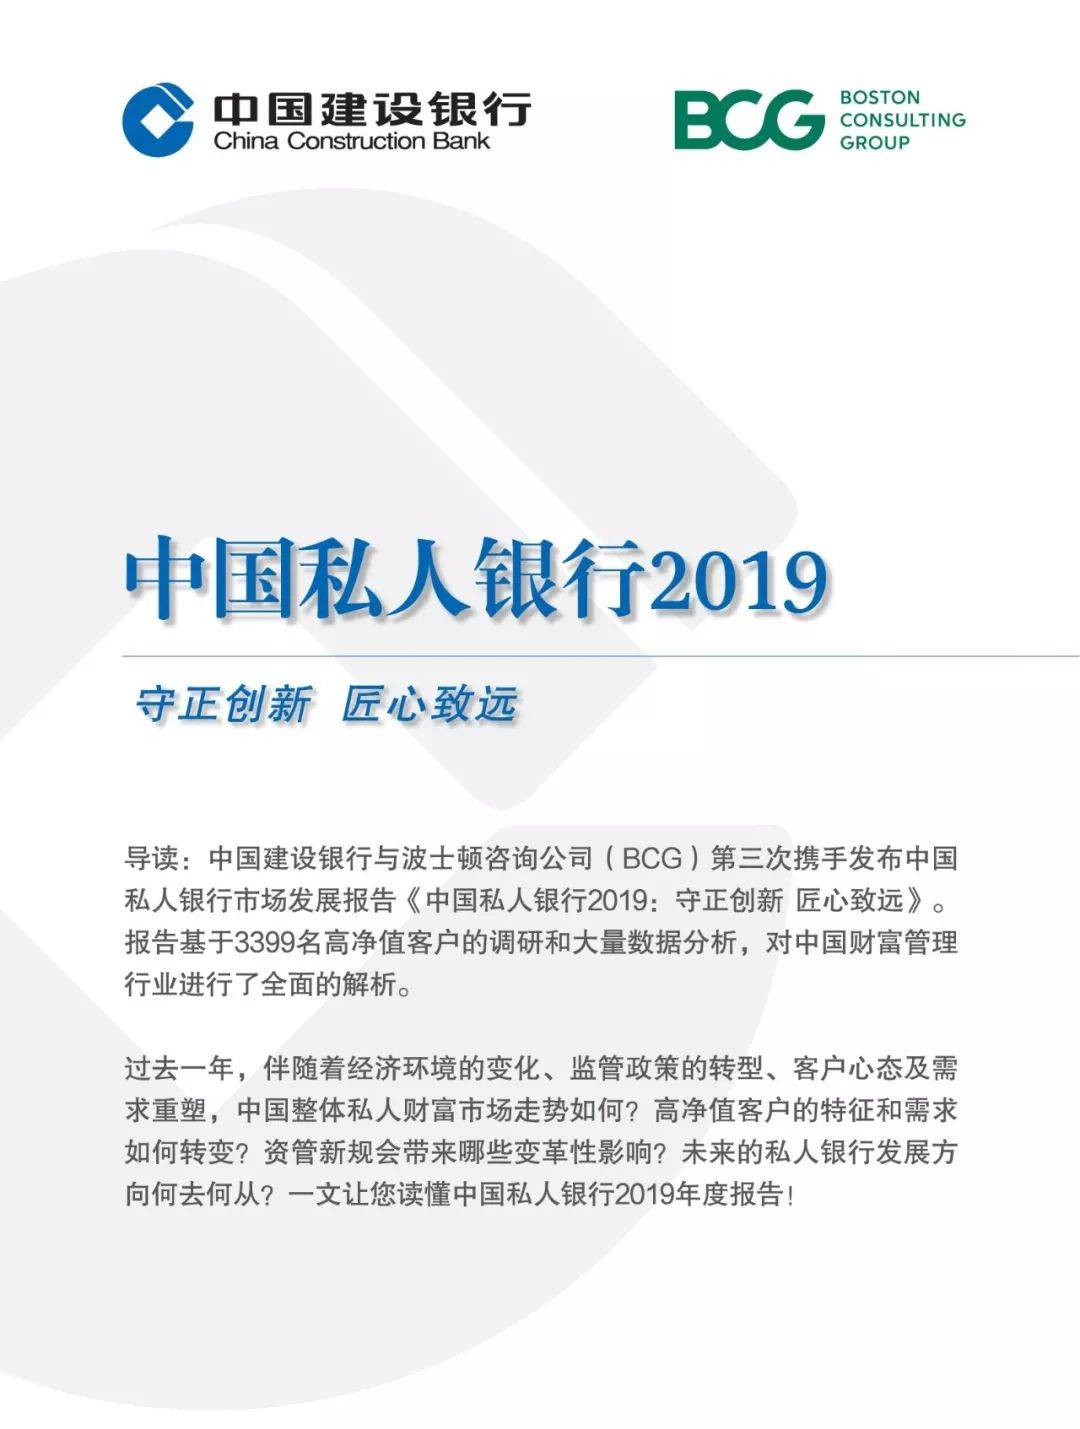 中国私人银行2019年度报告:60%的客户最需要